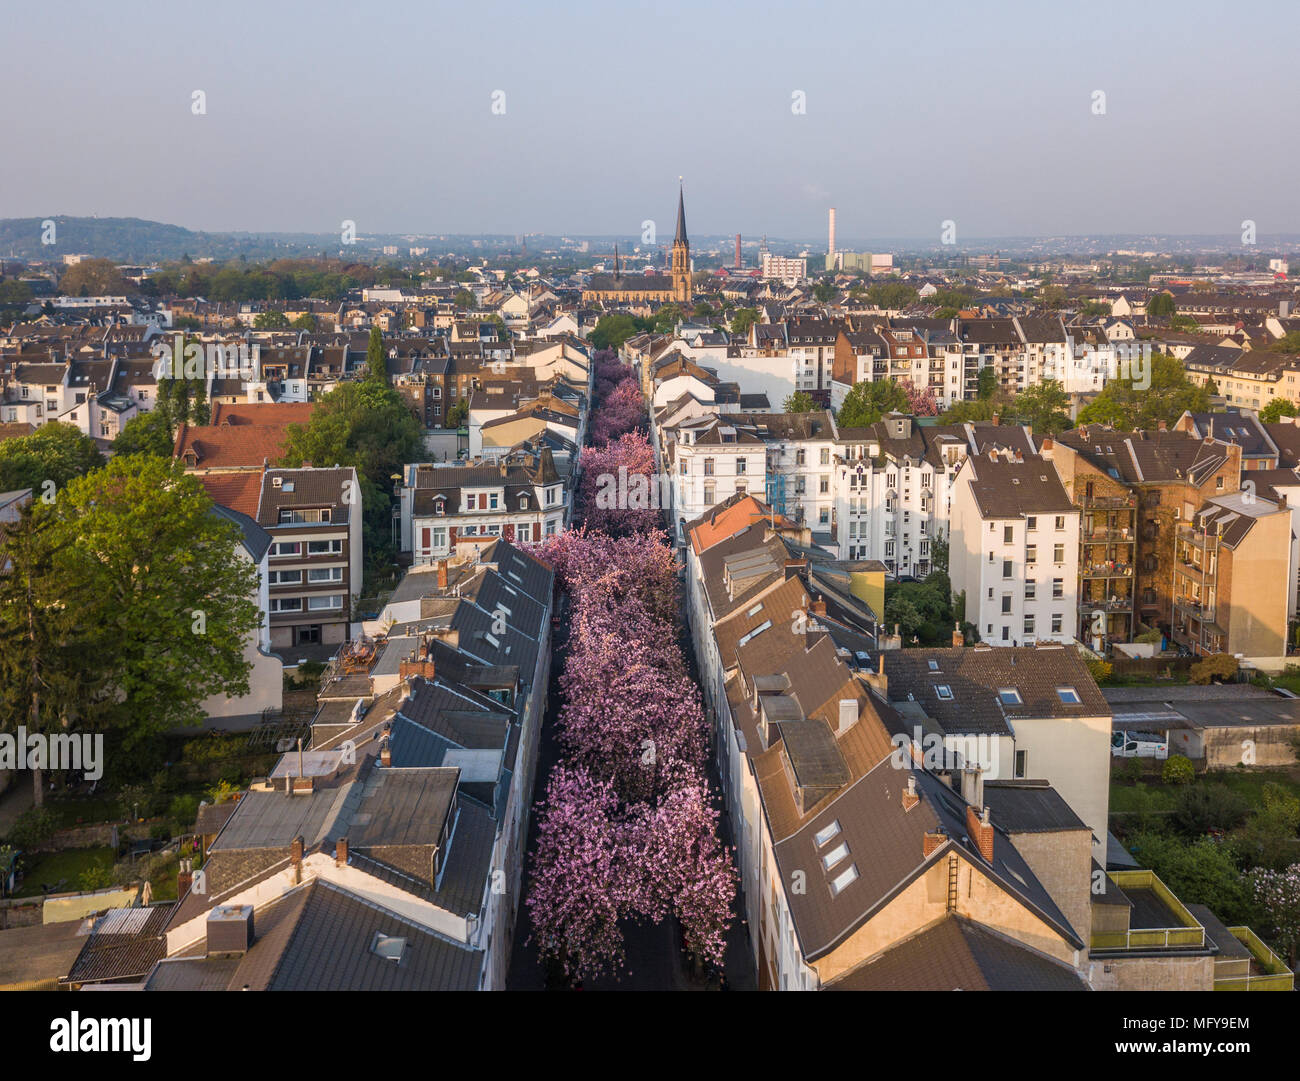 BONN, Allemagne - 21 avril 2018 : Vue aérienne de l'Avenue des cerisiers en fleur ou Heerstrasse pendant les pics de sakura en fleurs en Avril Banque D'Images